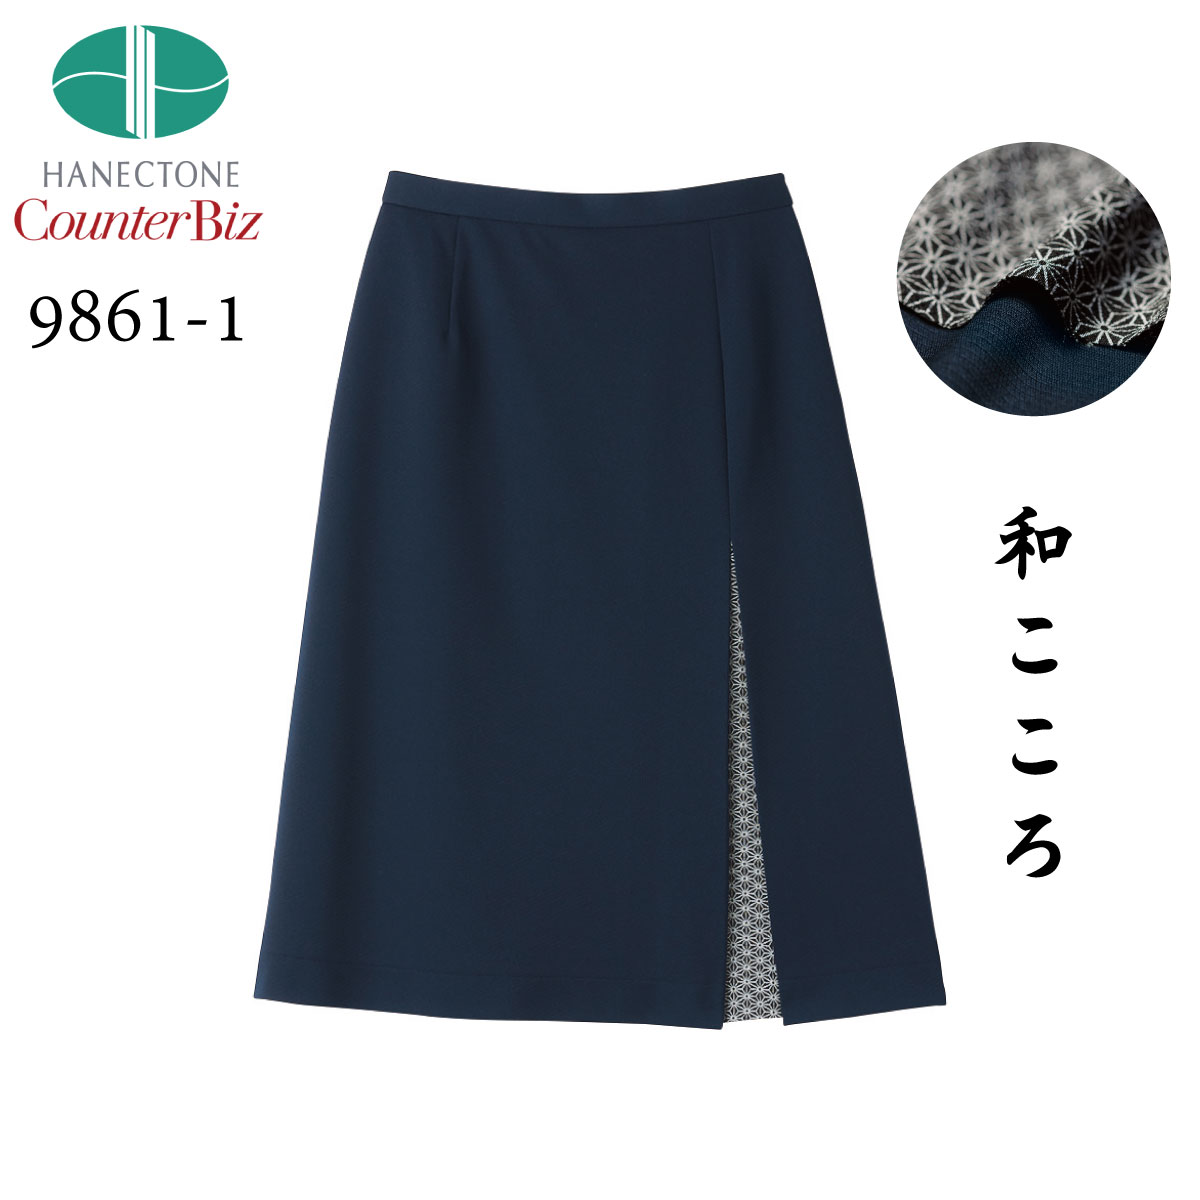 和風デザイン スカート 9861-1 ネイビー 5号～19号 ストレッチ素材 Counter Biz カウンタービズ HANECTONE ハネクトーン